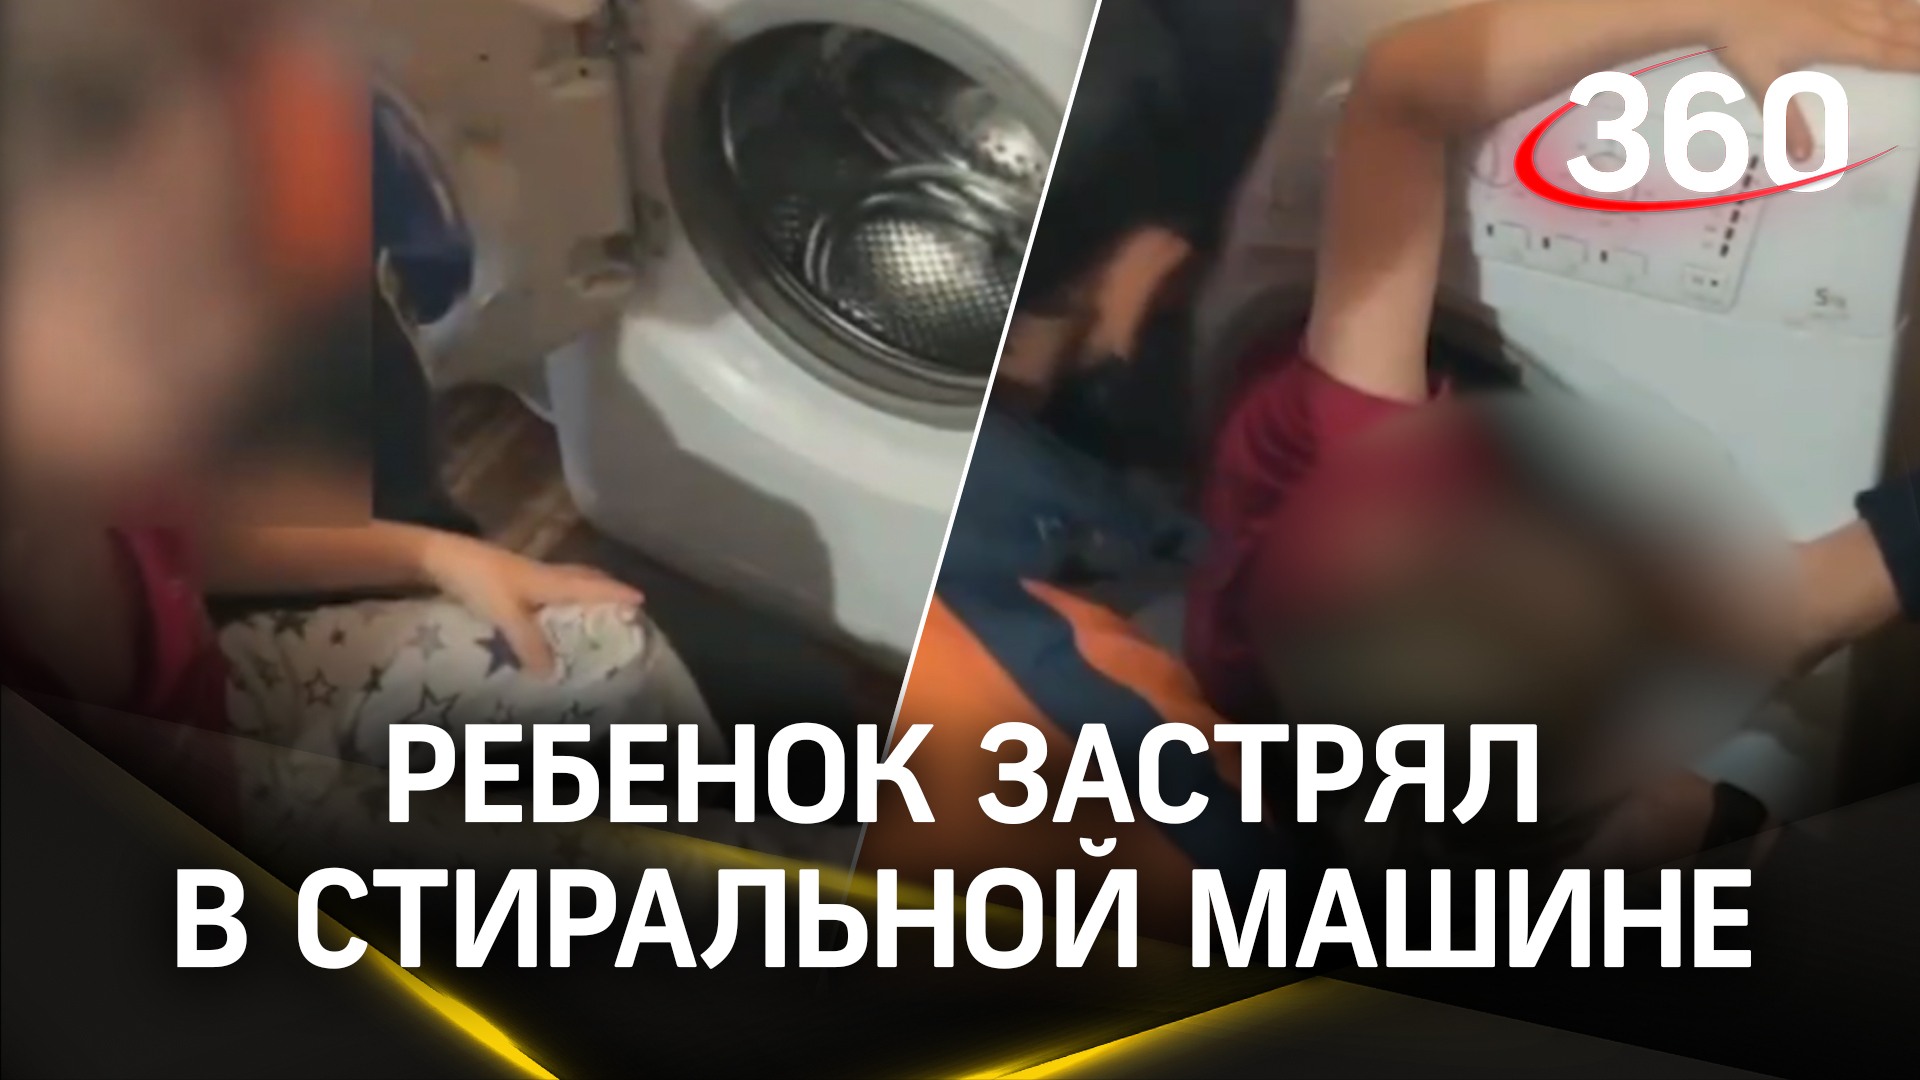 Застрял в стиралке - как вытаскивали пятилетнего мальчика из барабана спасатели в Казани